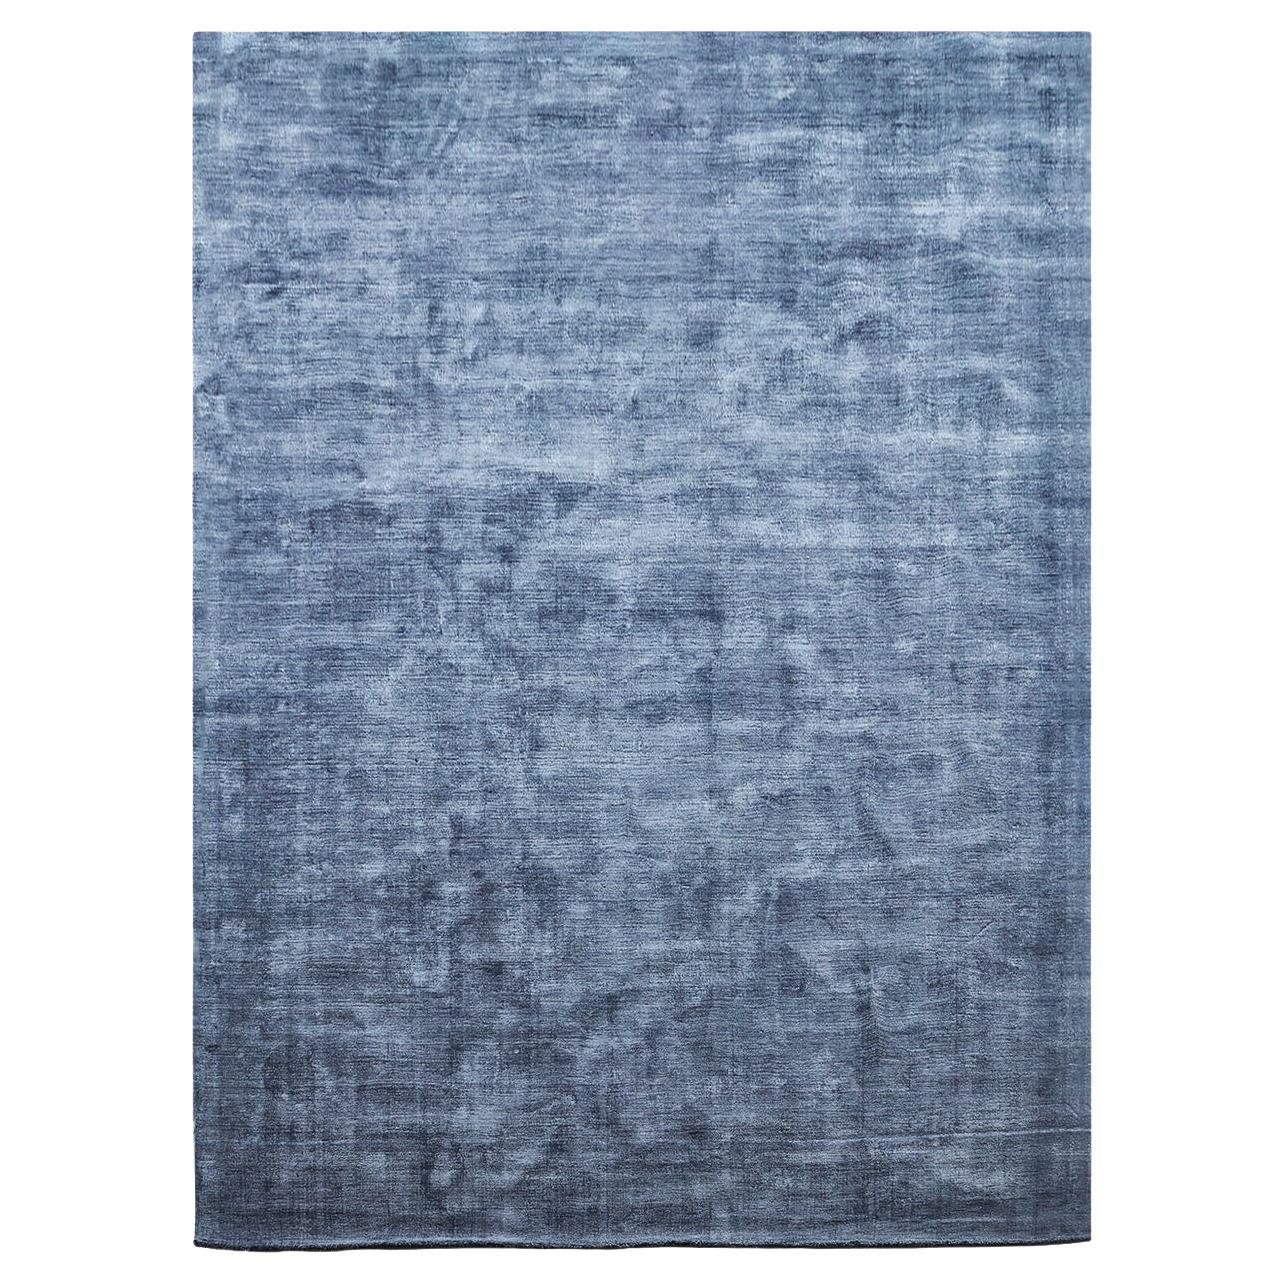 Washed Blue Karma Carpet by Massimo Copenhagen